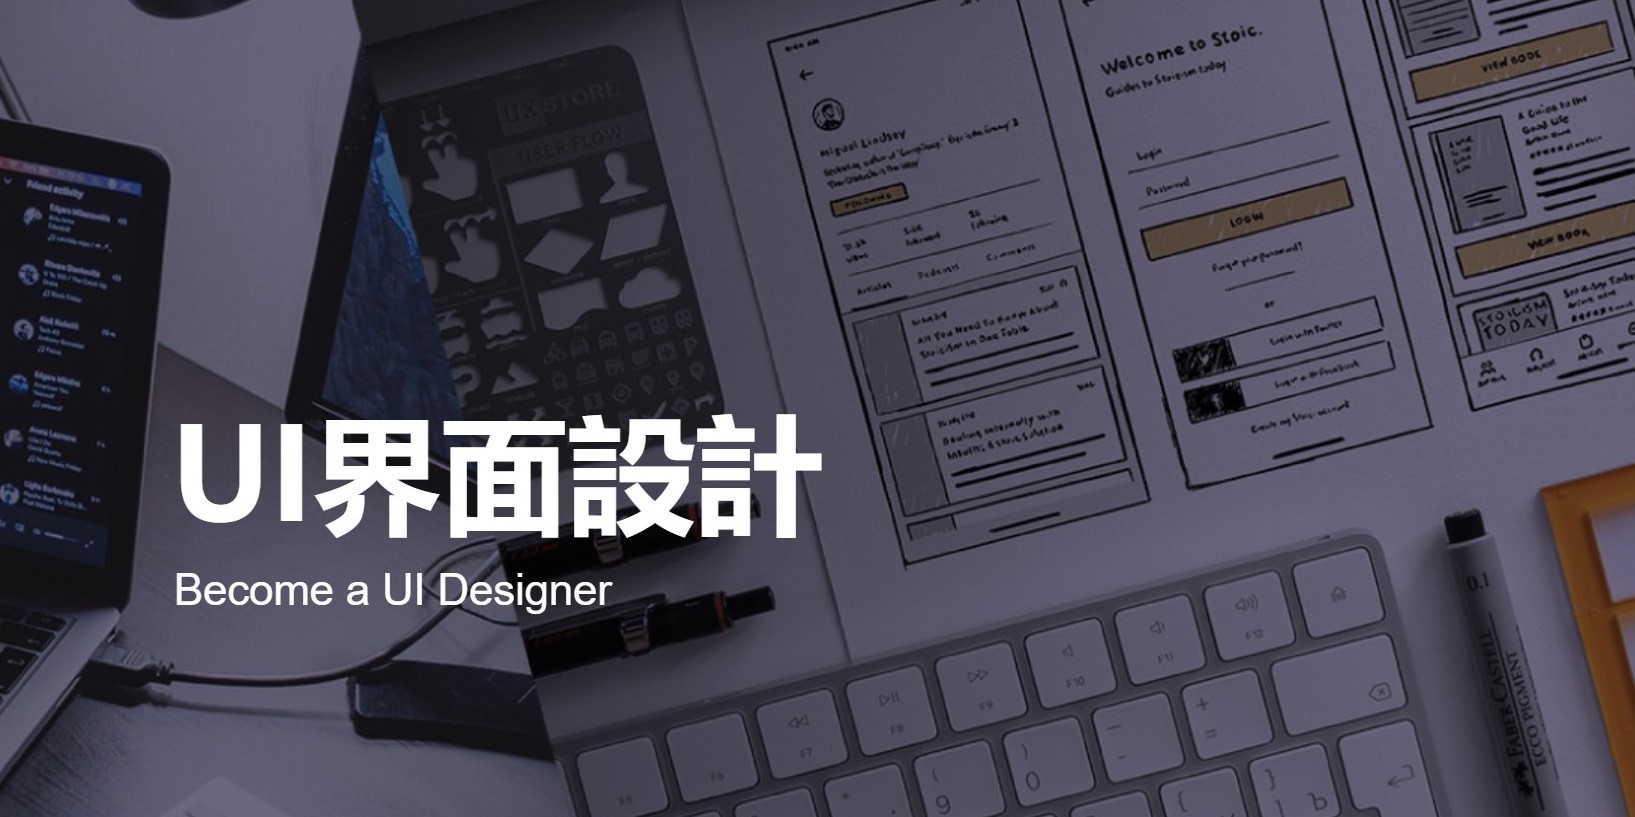 上海五加一培训 UI界面设计课程 政府补贴